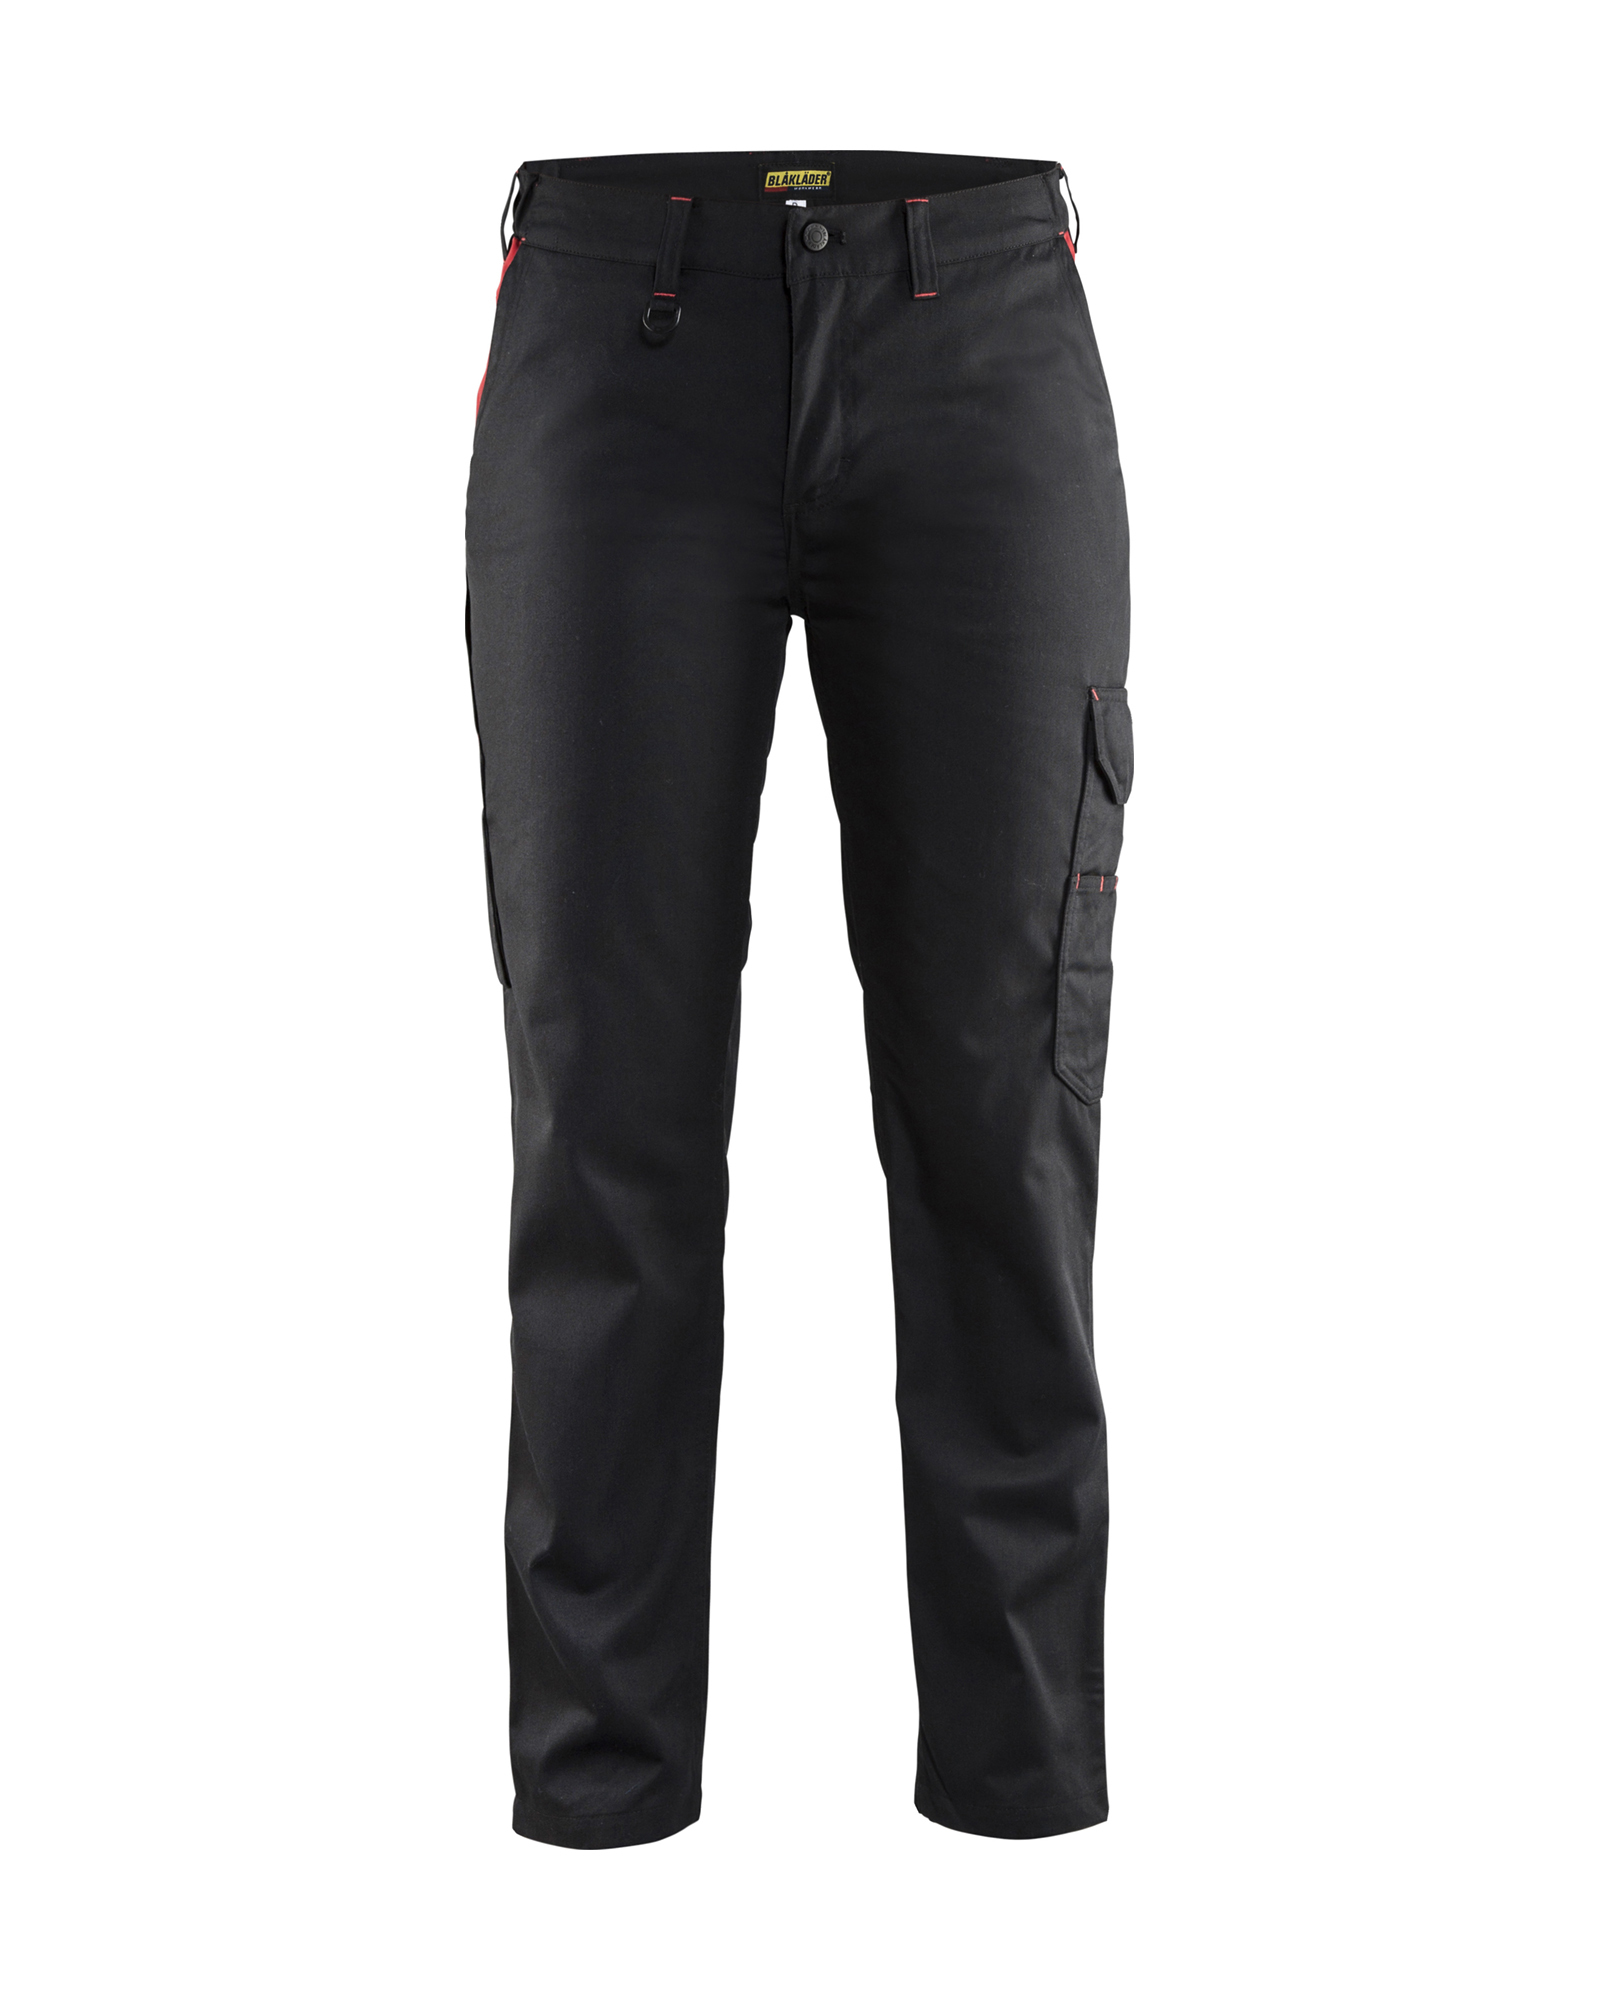 Pantalon Industrie femme Blåkläder 7104 Noir/Rouge Blaklader - 710418009956C